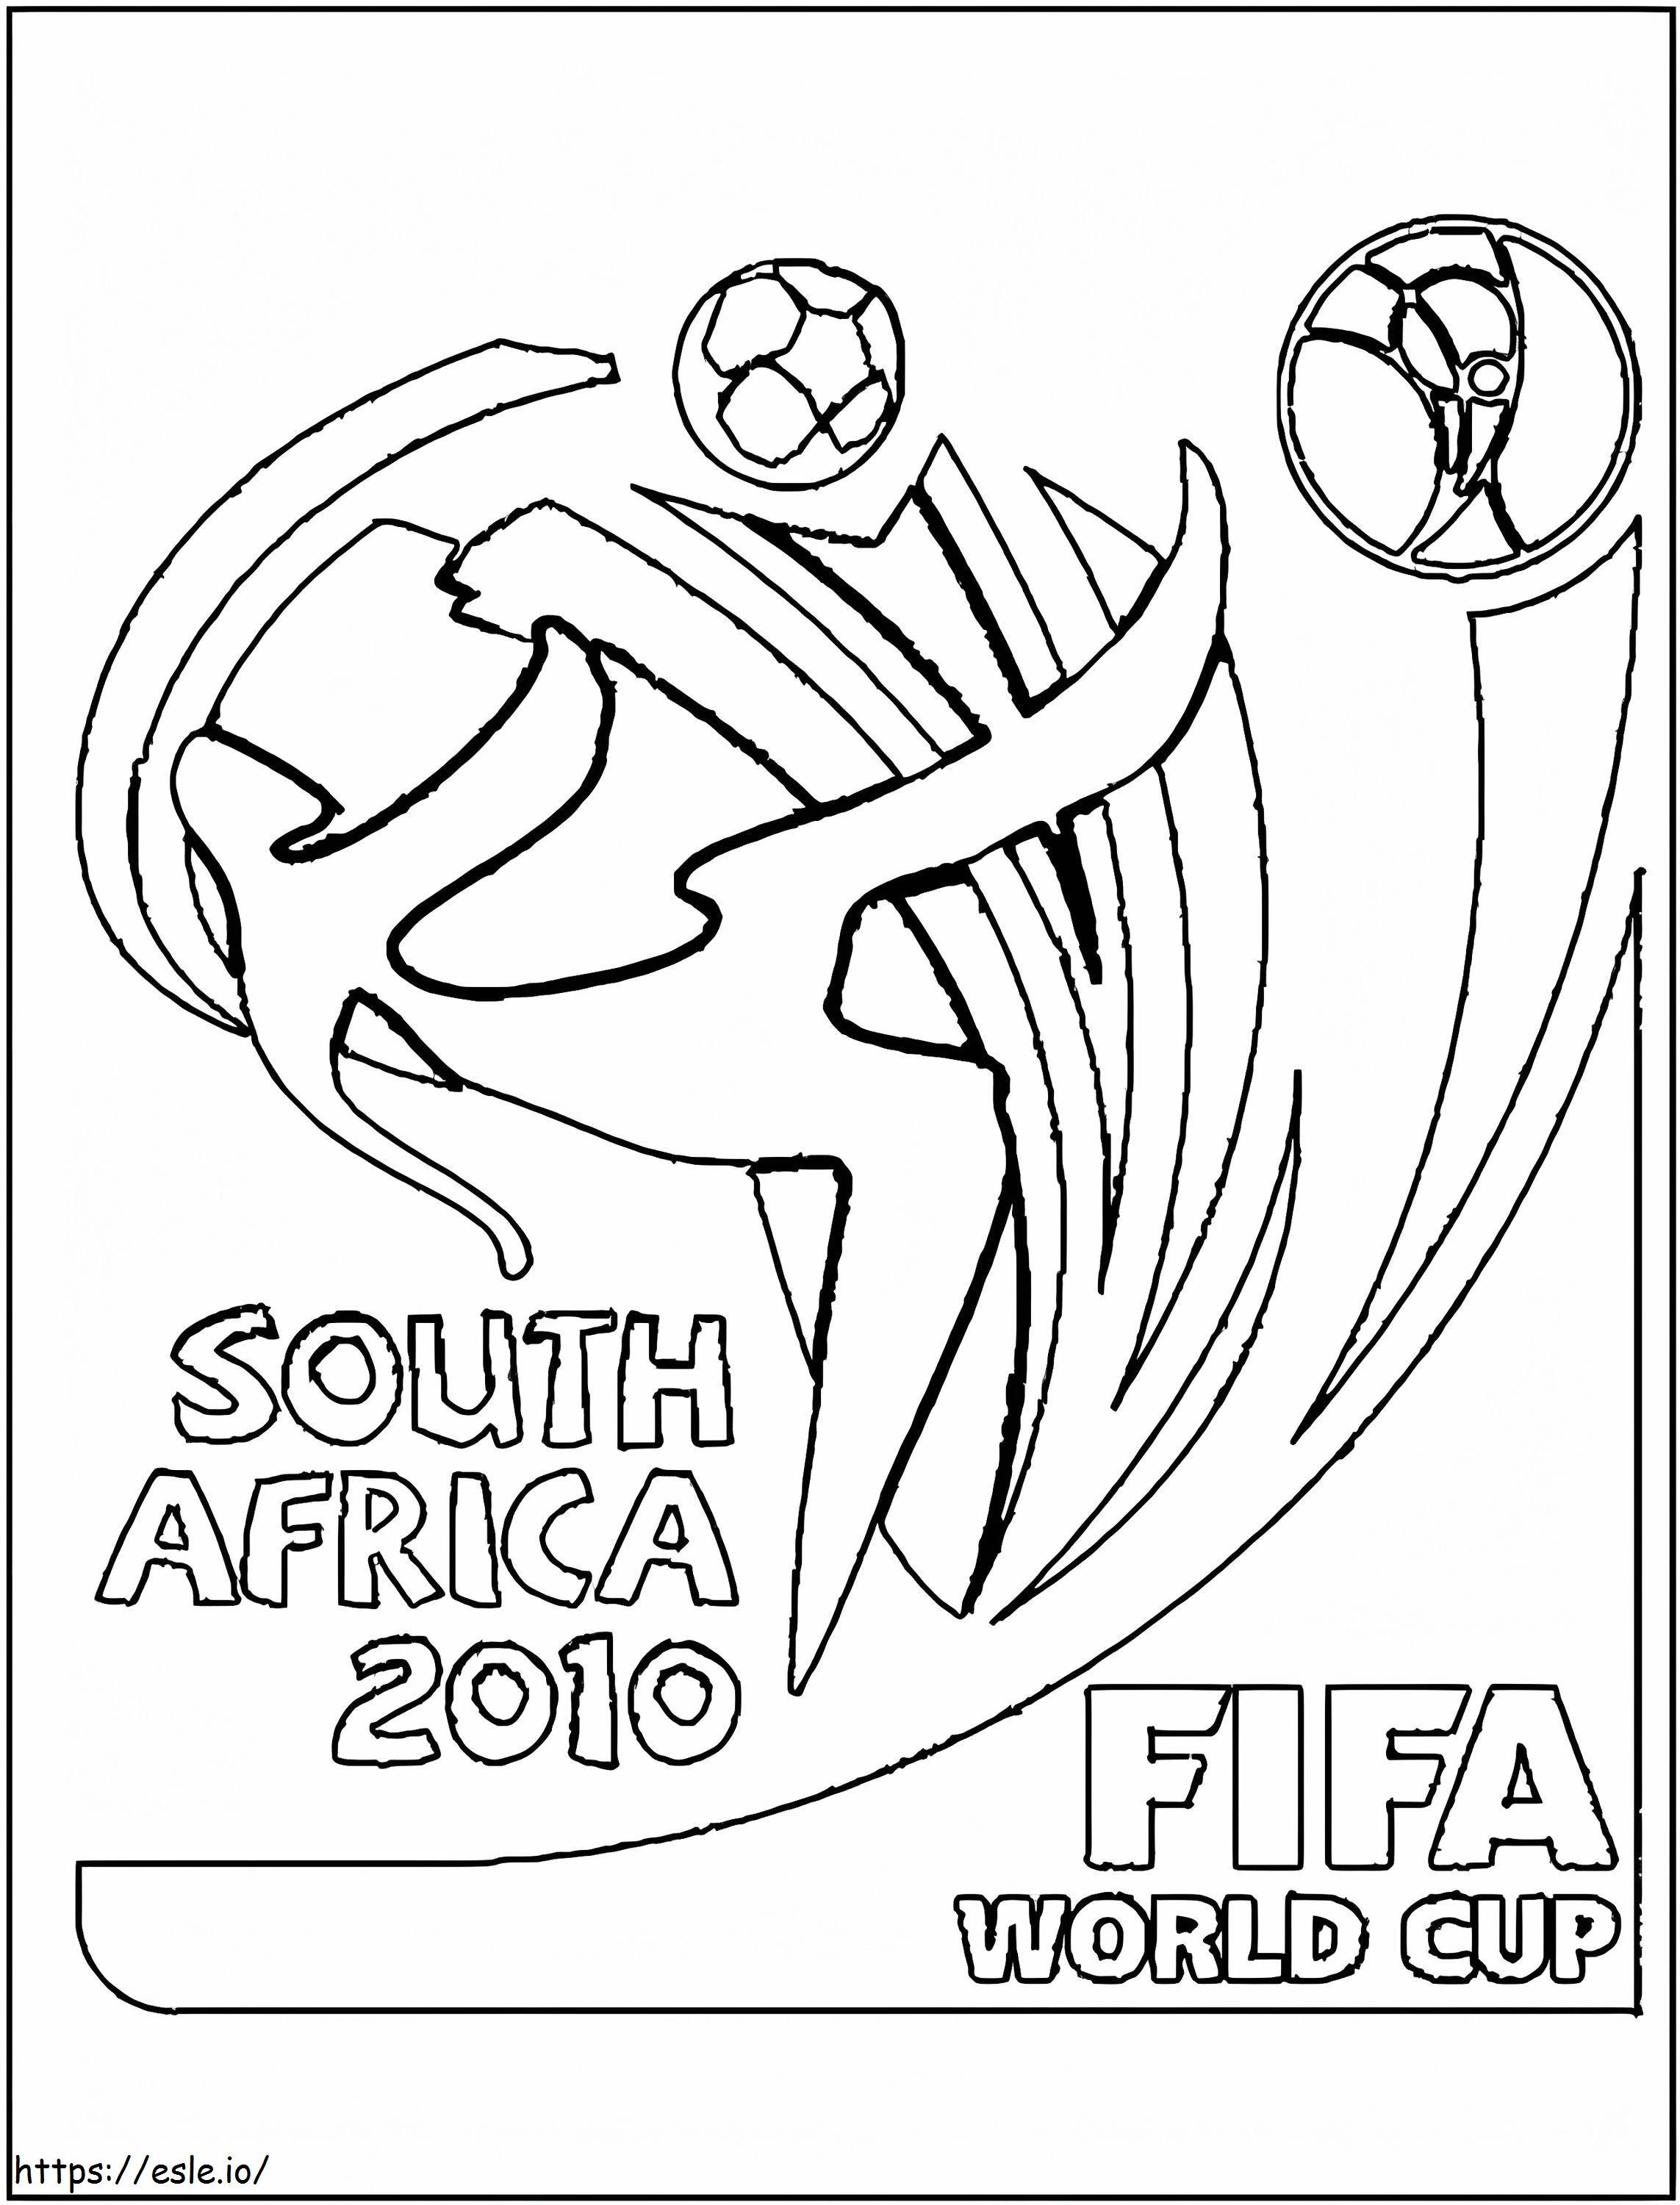 Mondiali del Sud Africa 2010 da colorare